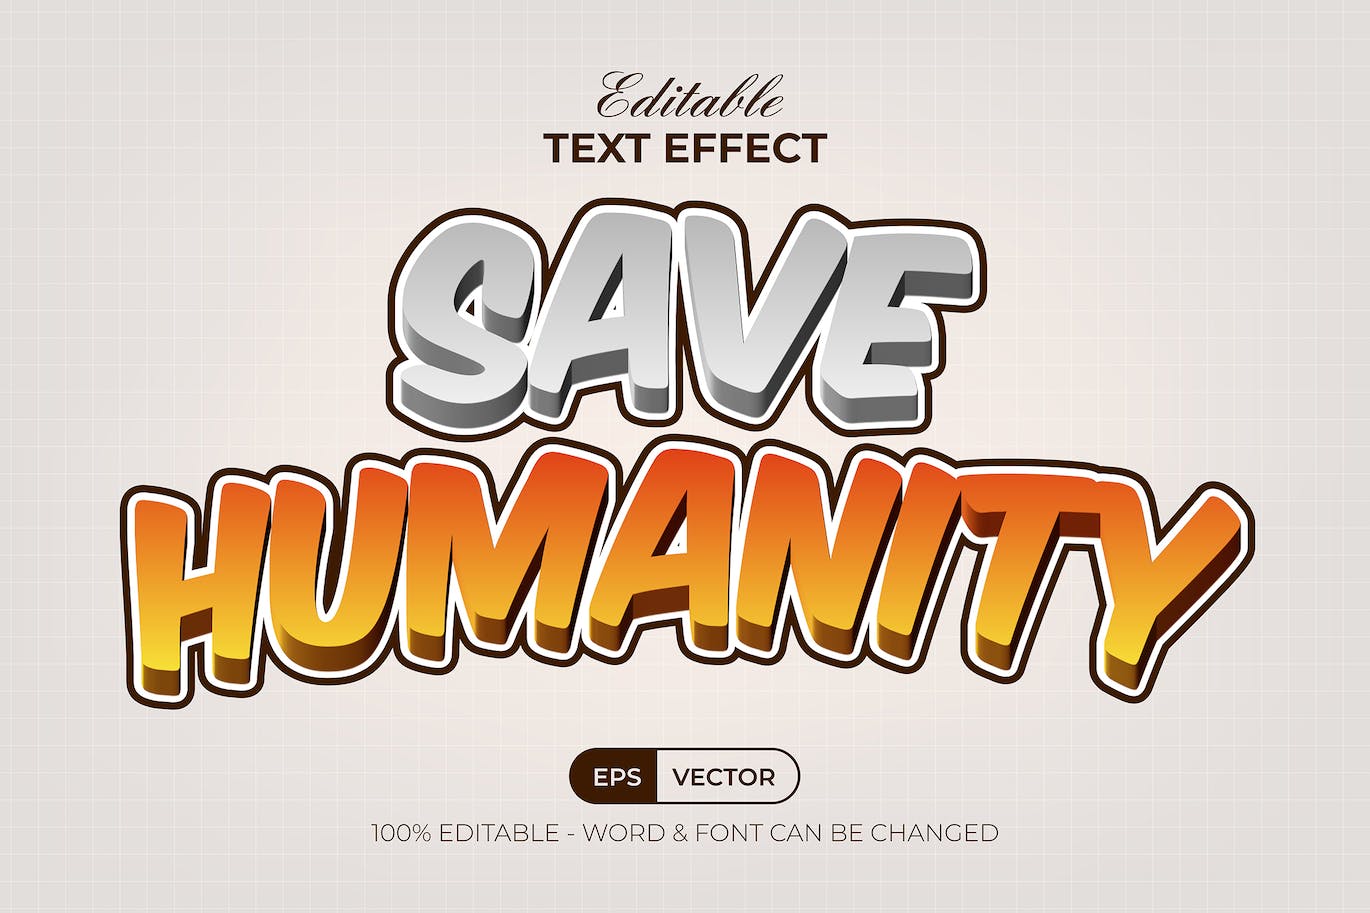 文字效果漫画风格 AI 字体样式 Text Effect Comic Style